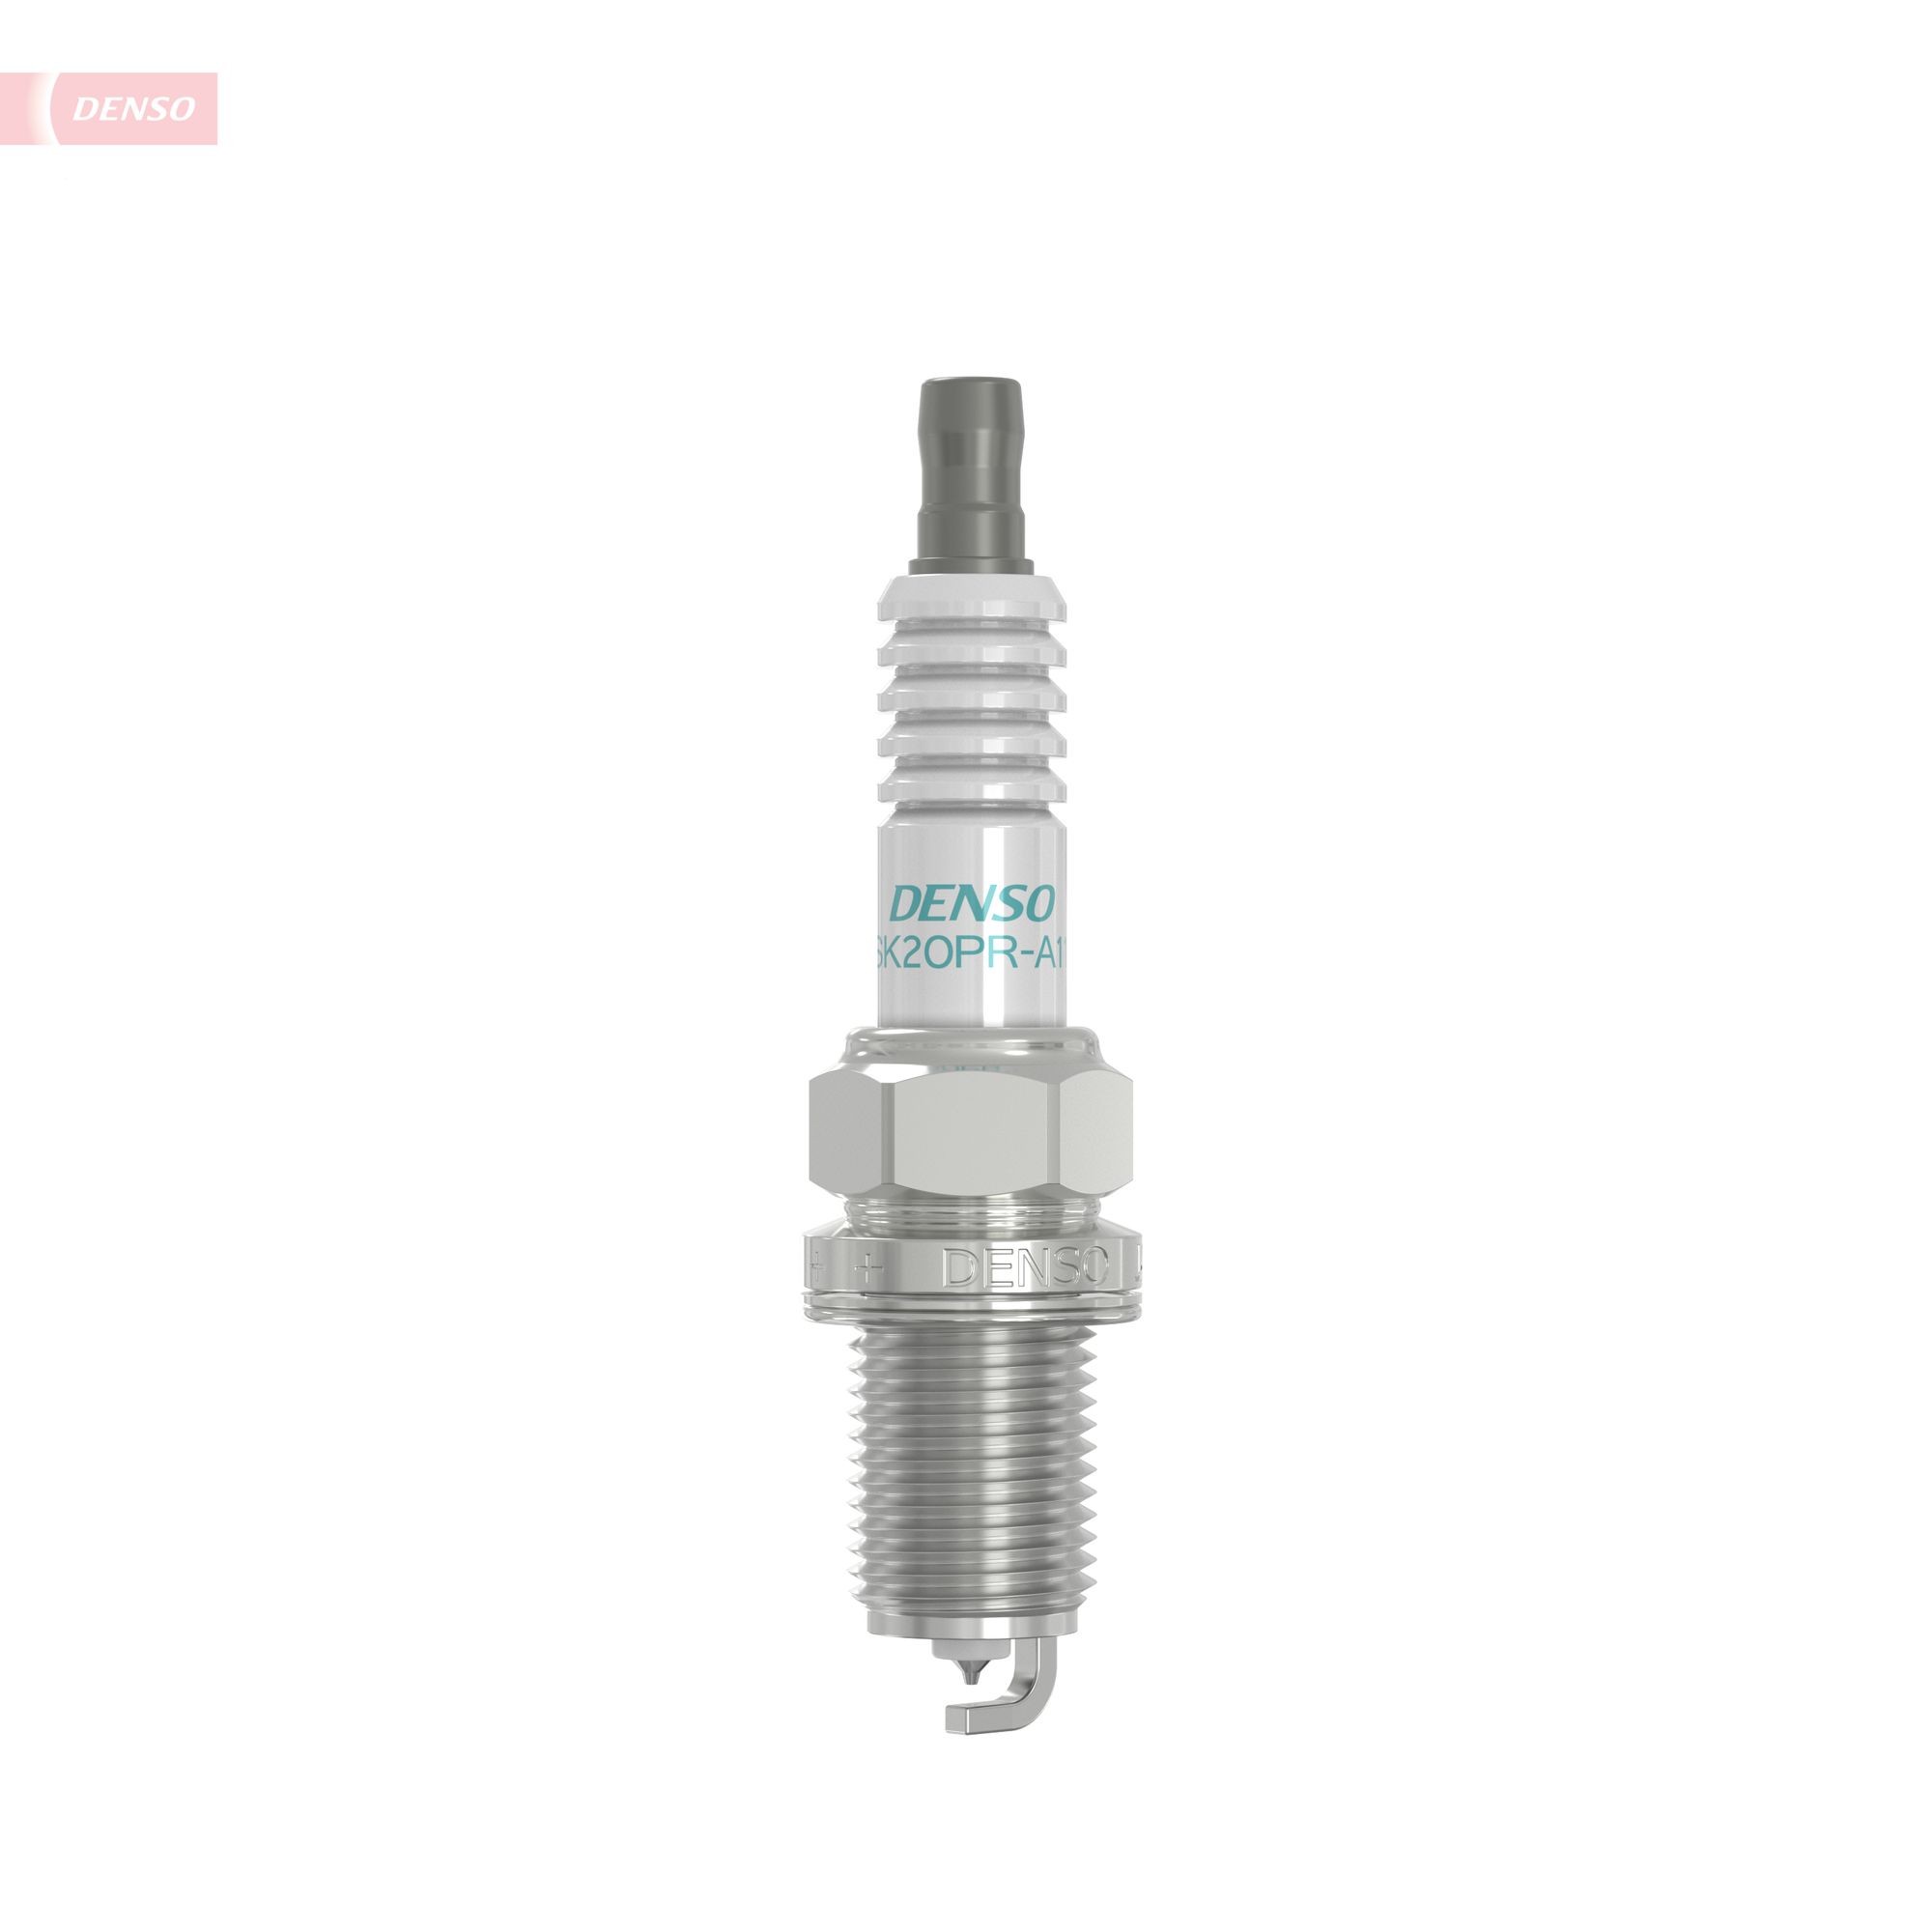 3418 DENSO Iridium SK20PR-A11 Spark plug MD373645